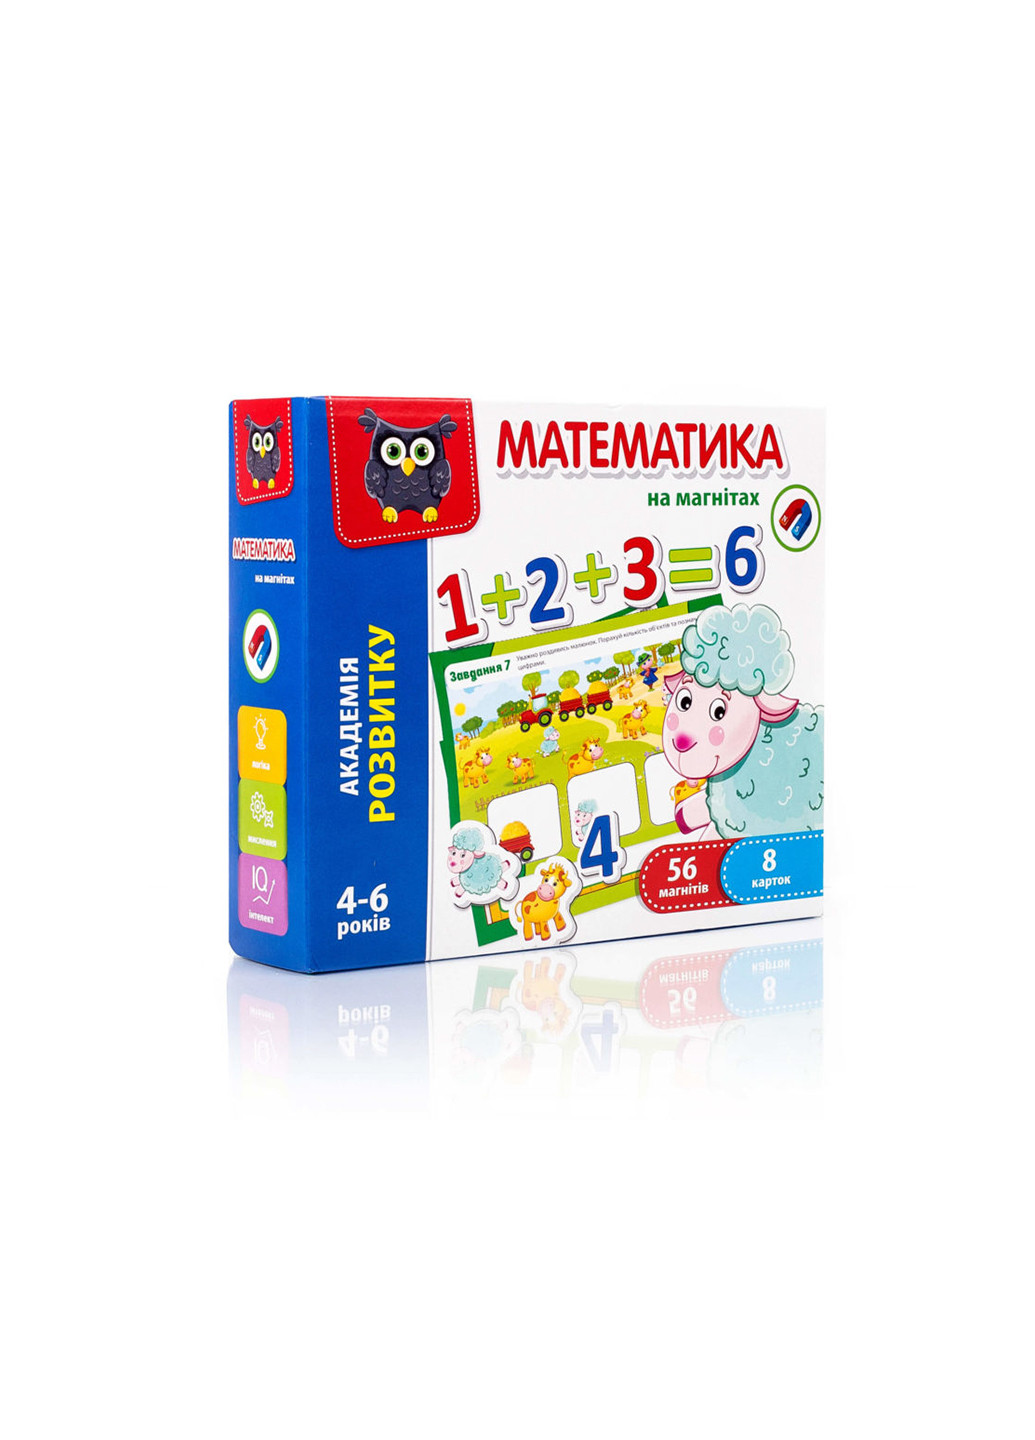 Математика на магнитах Vladi toys vt5411-04 (255259578)